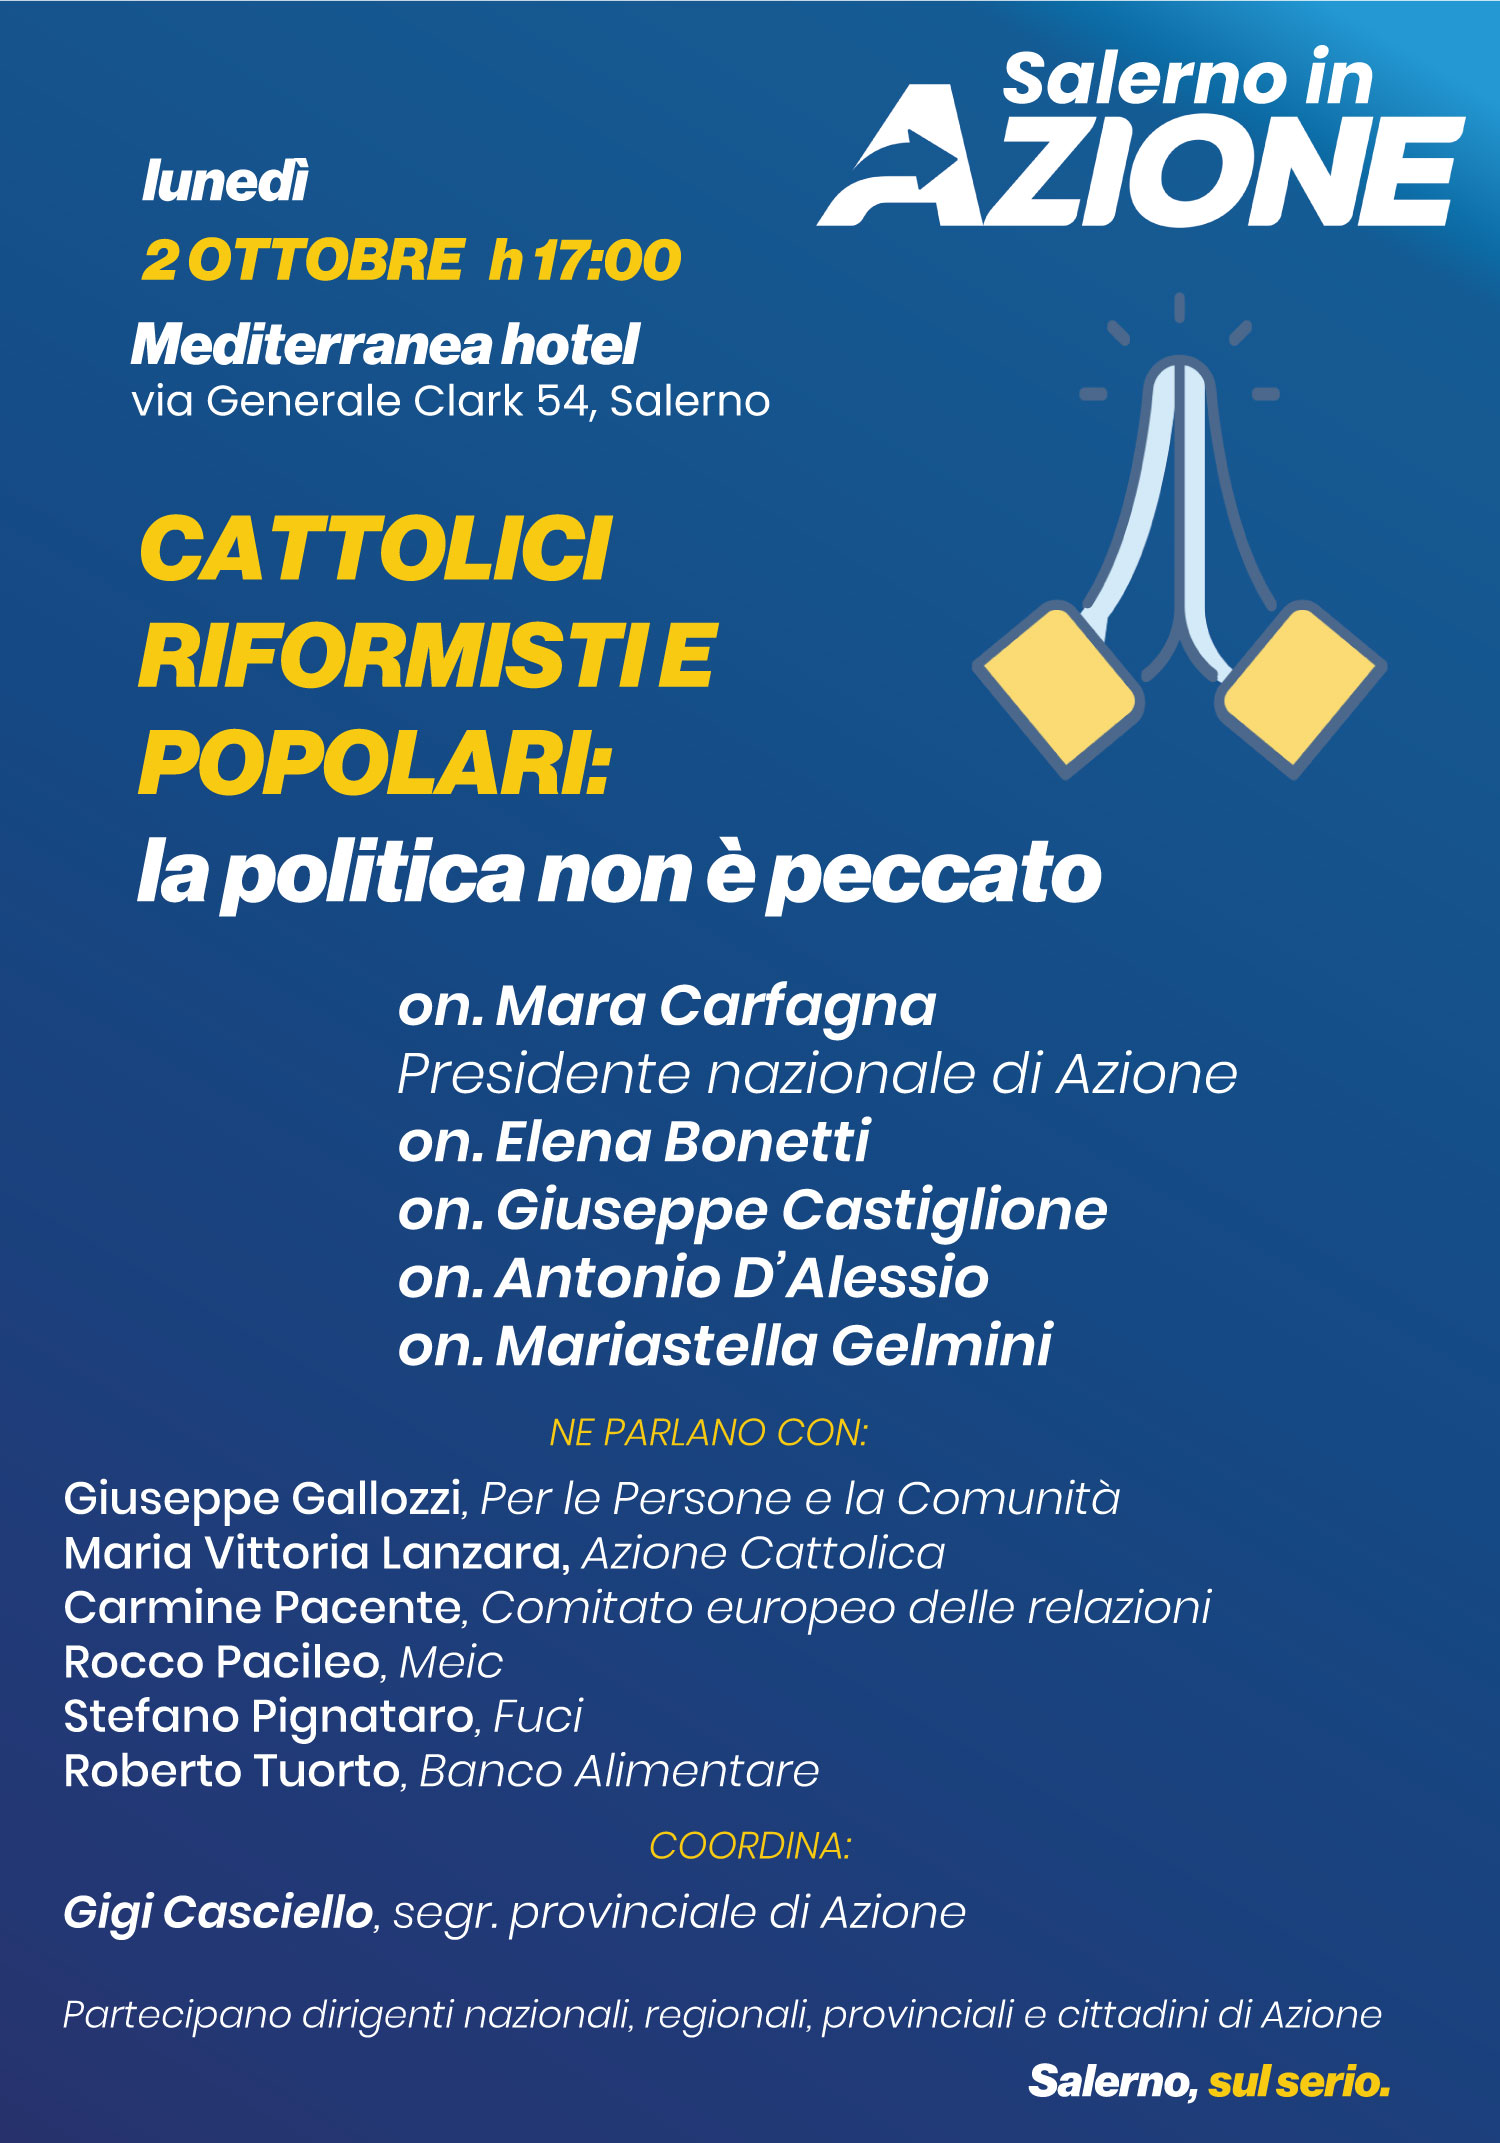 Salerno: Azione, Cattolici Riformisti e Popolari, incontro “La politica non è peccato”